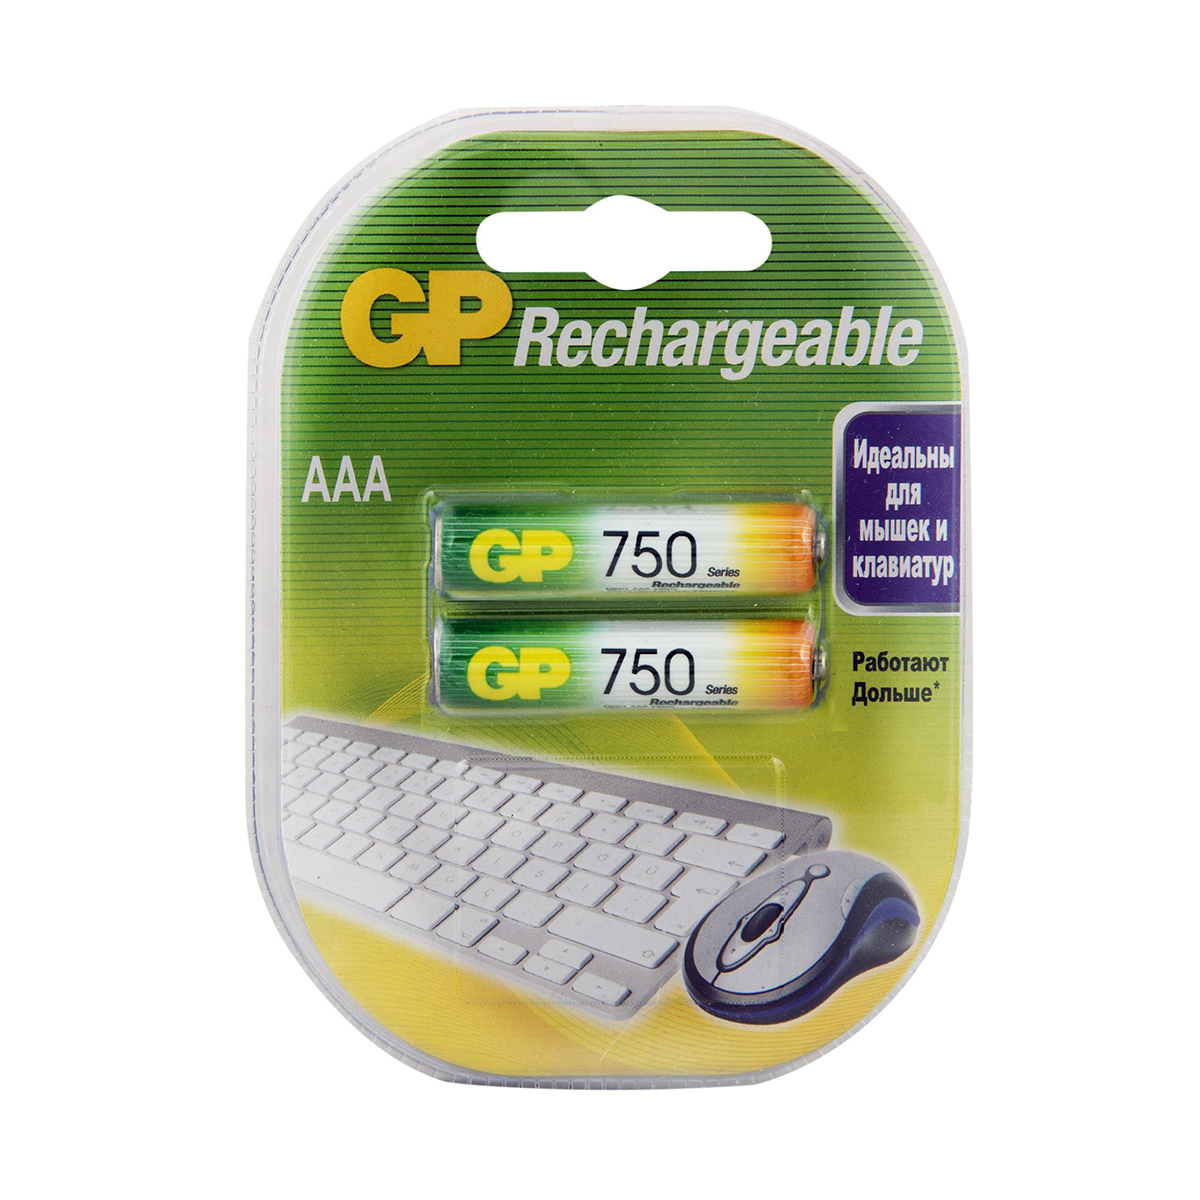 Аккумулятор gp rechargeable 75aaahc-2decrc2  тип ааа, 750 мач (2 шт. в блистере) (1/10/100)